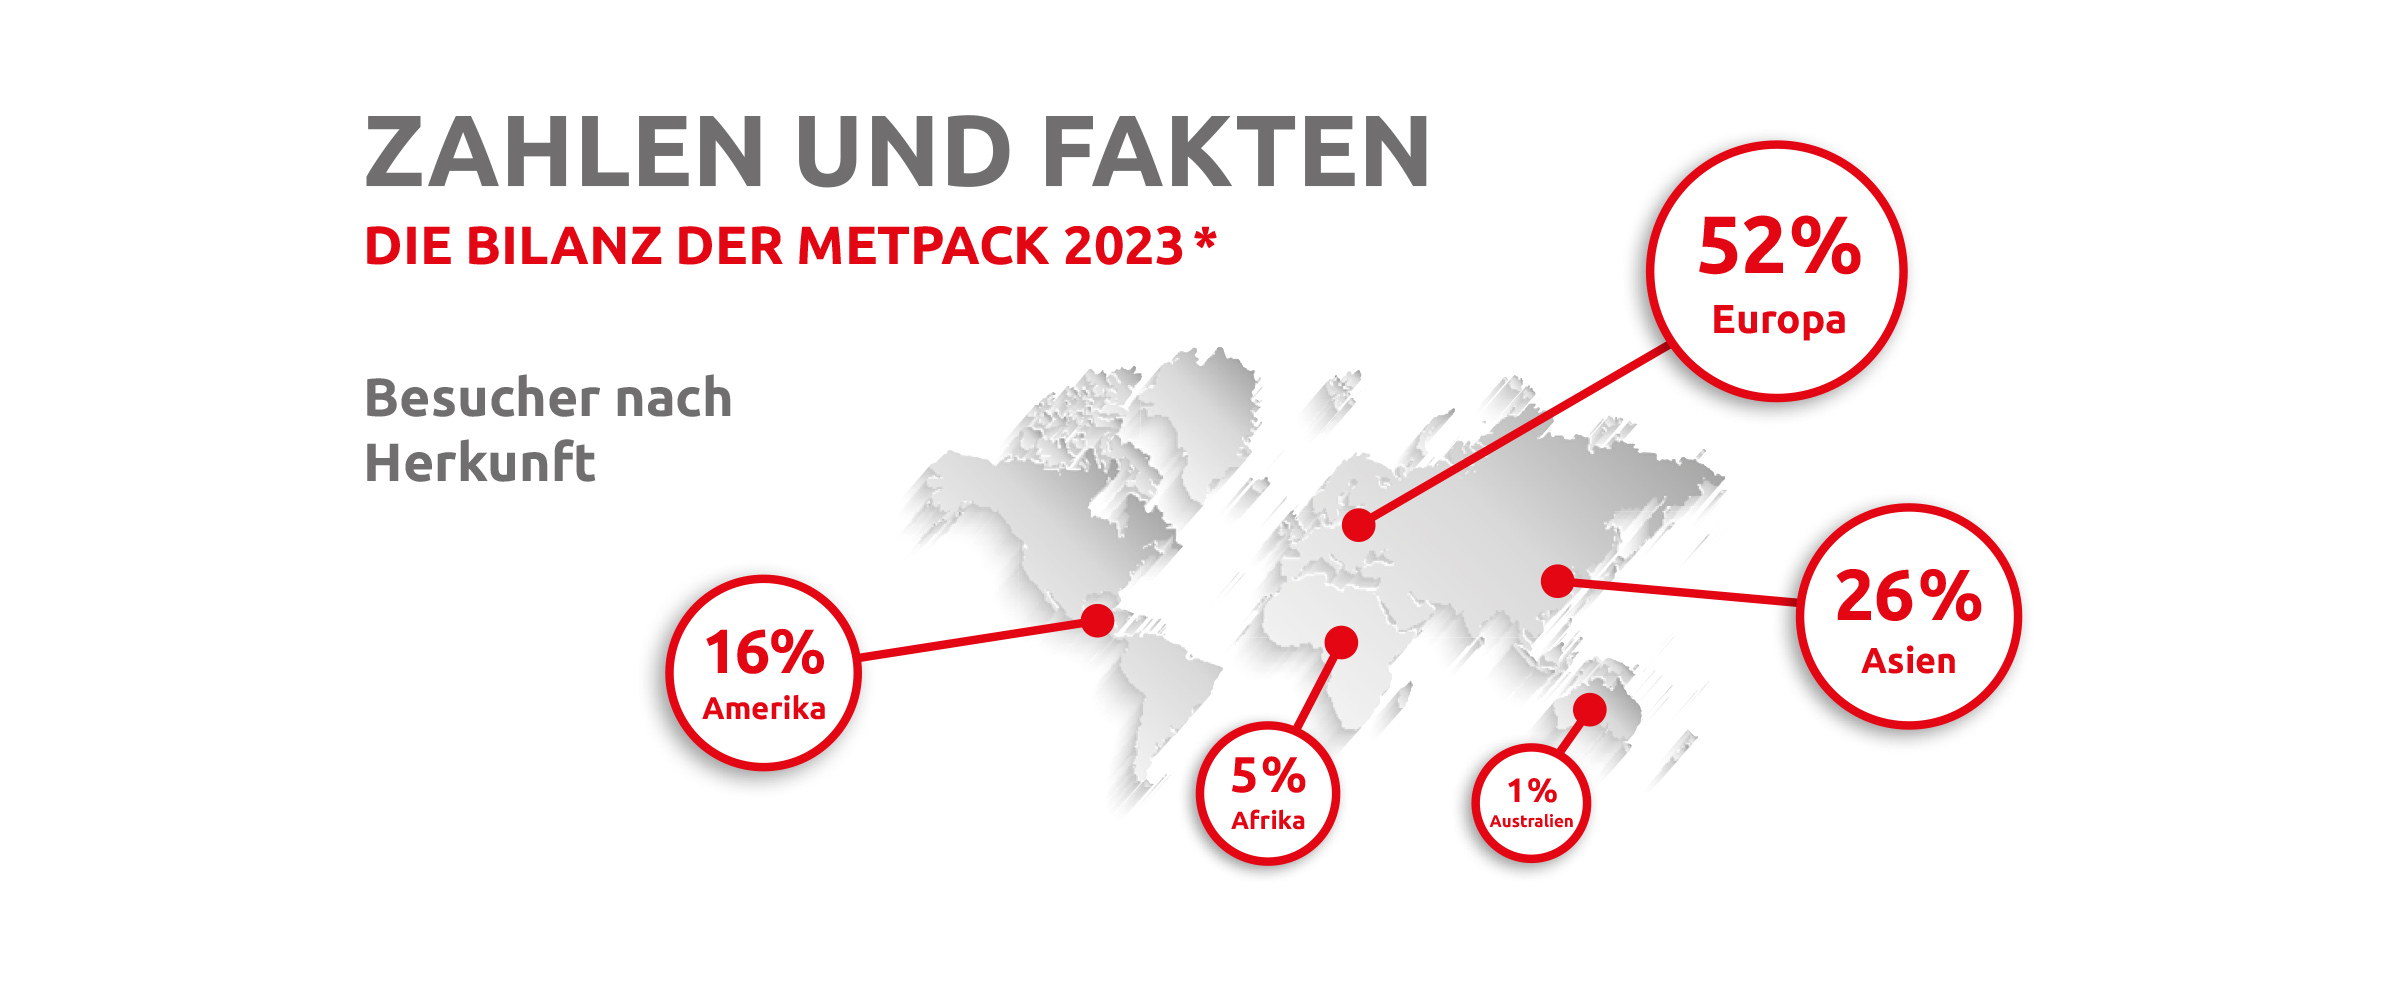 METPACK: 
		METPACK 2026_Zahlen_Fakten_1
	